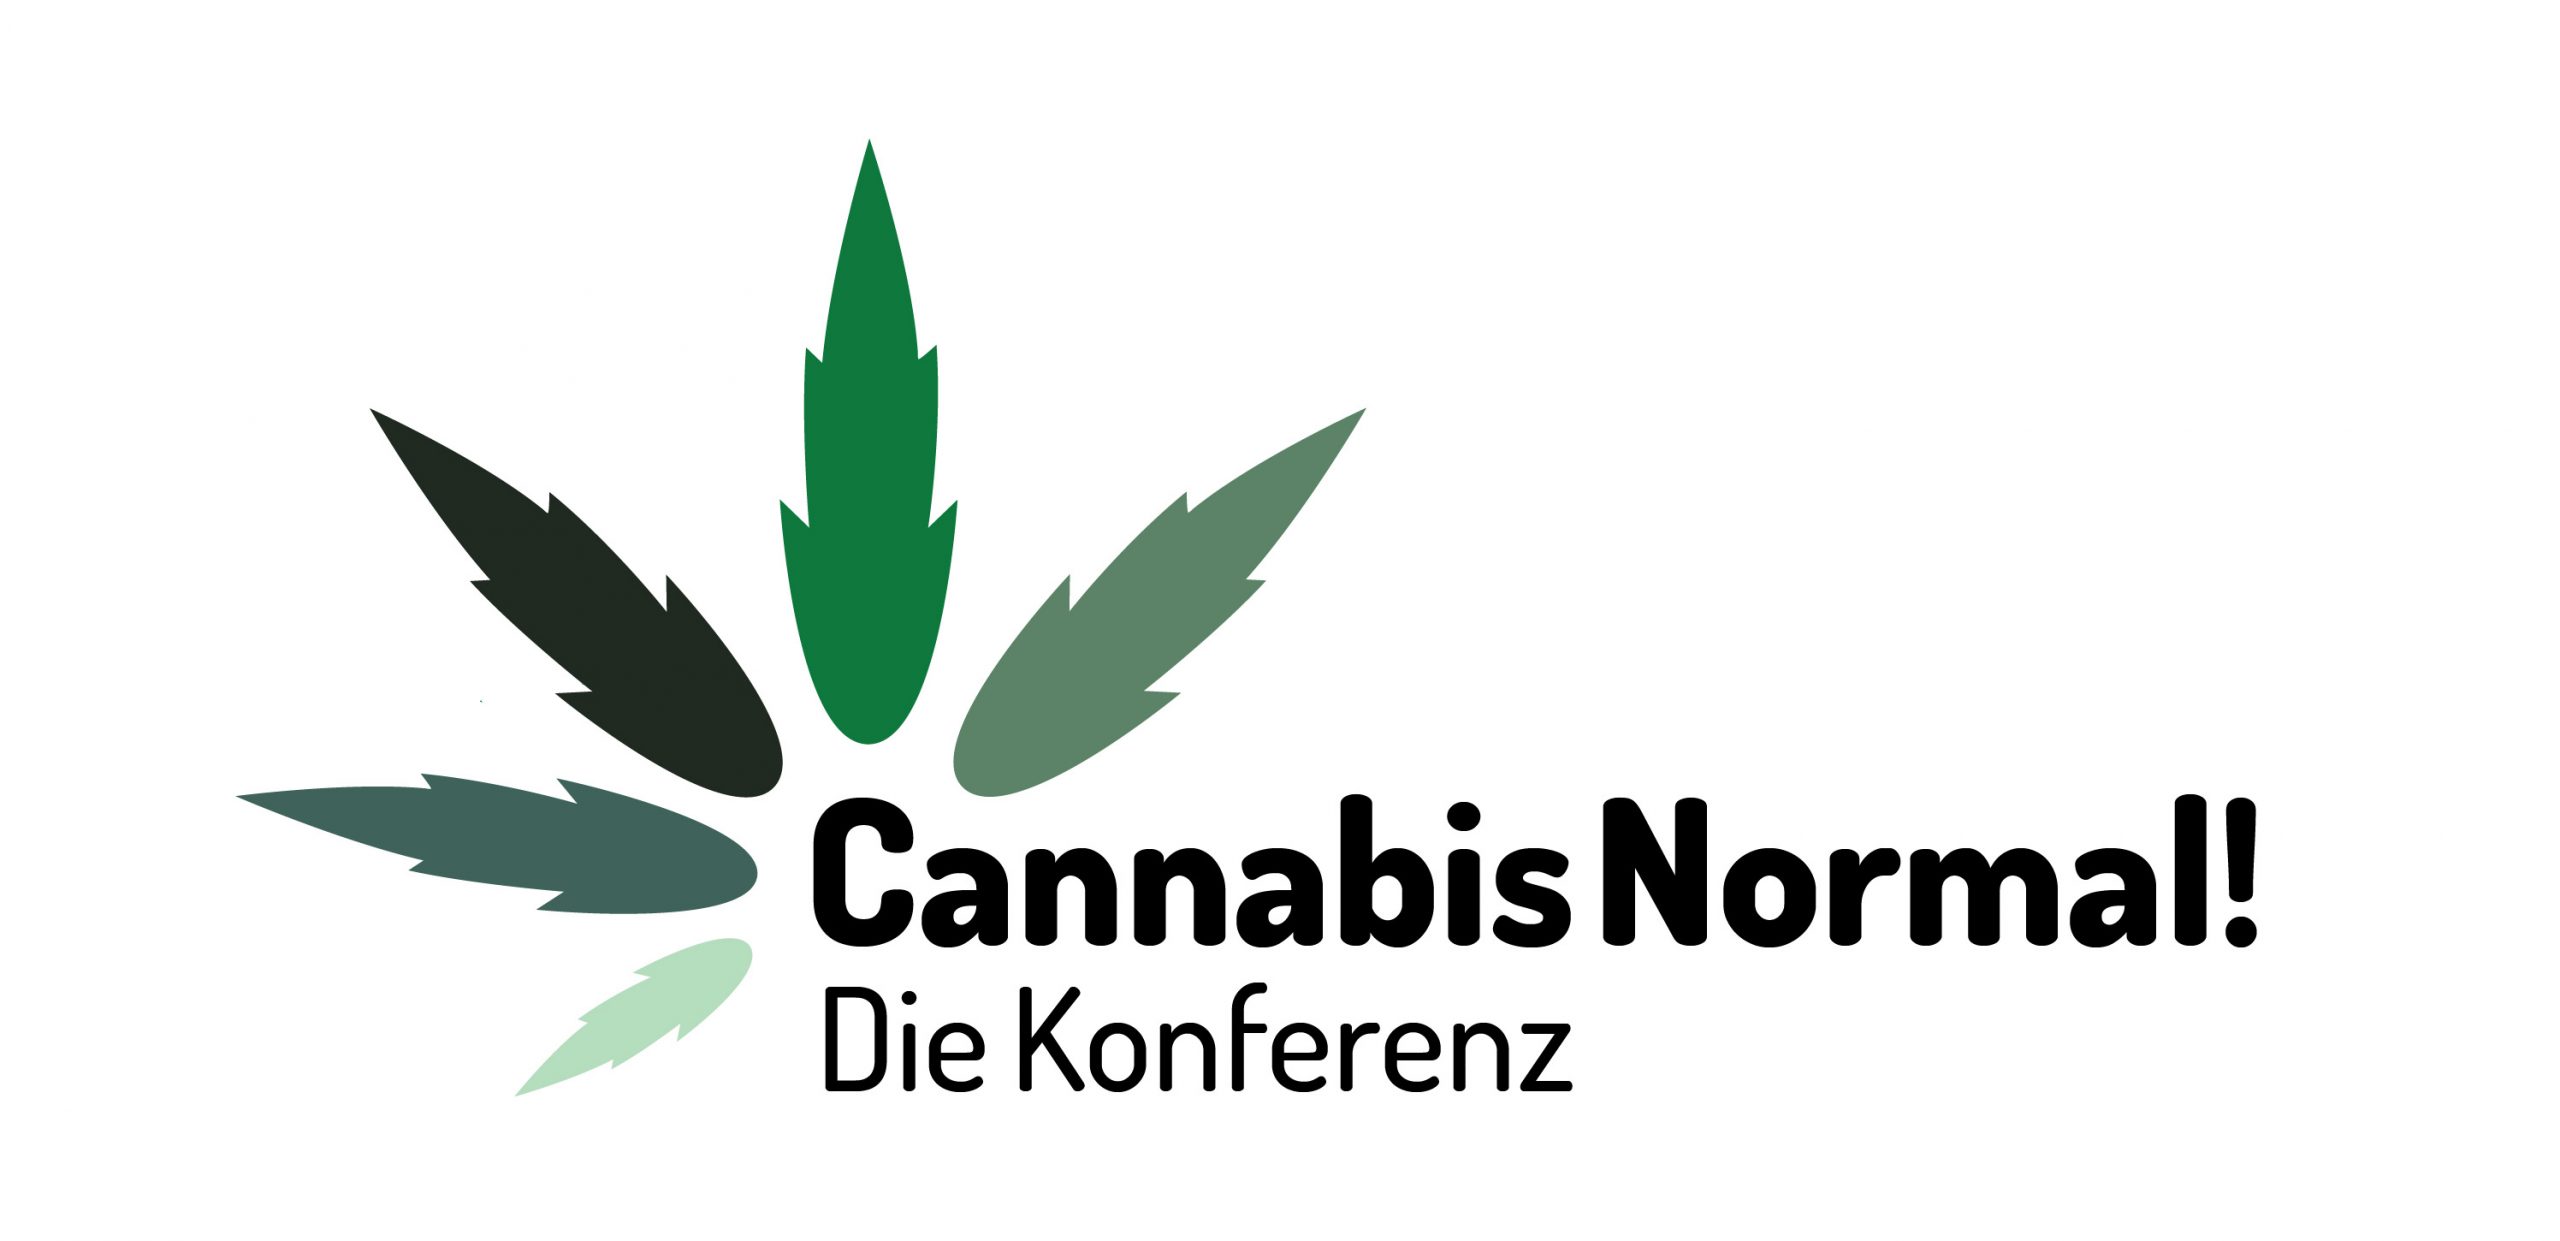 Cannabis Normal! – Die Konferenz des Deutschen Hanfverbandes